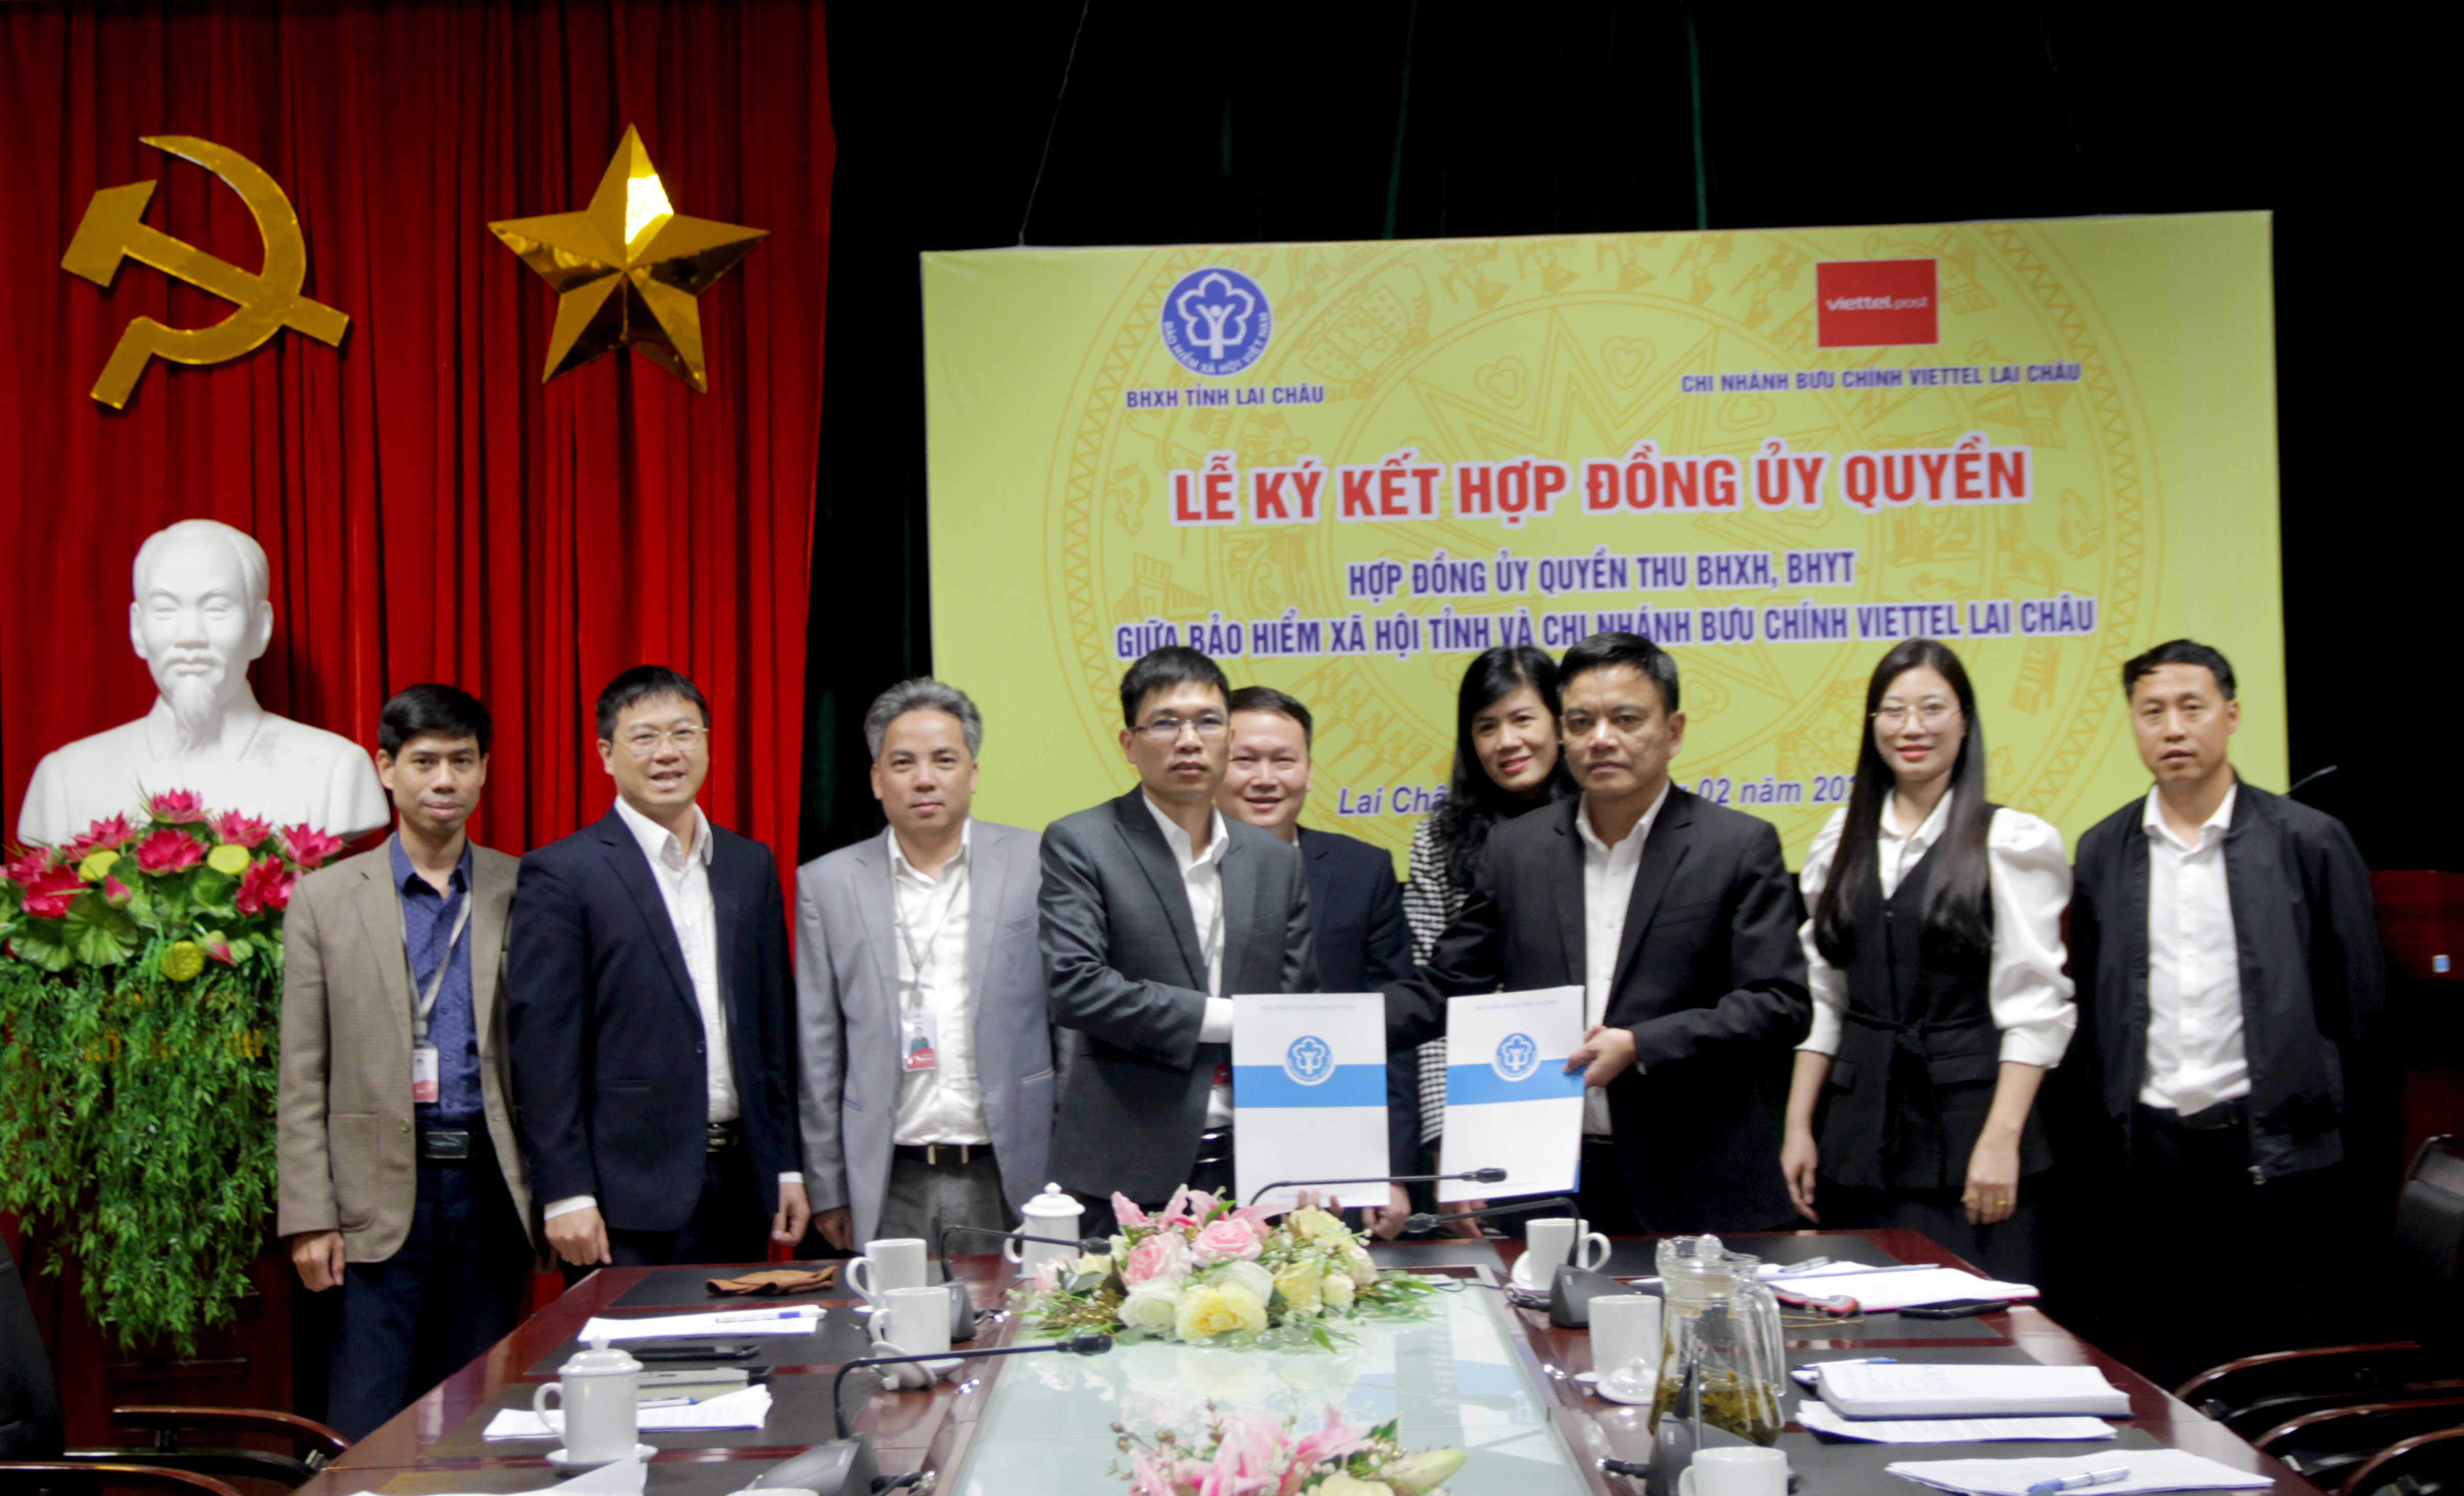 3.	Đại diện BHXH tỉnh và Bưu chính Viettel Lai Châu ký kết hợp đồng. 